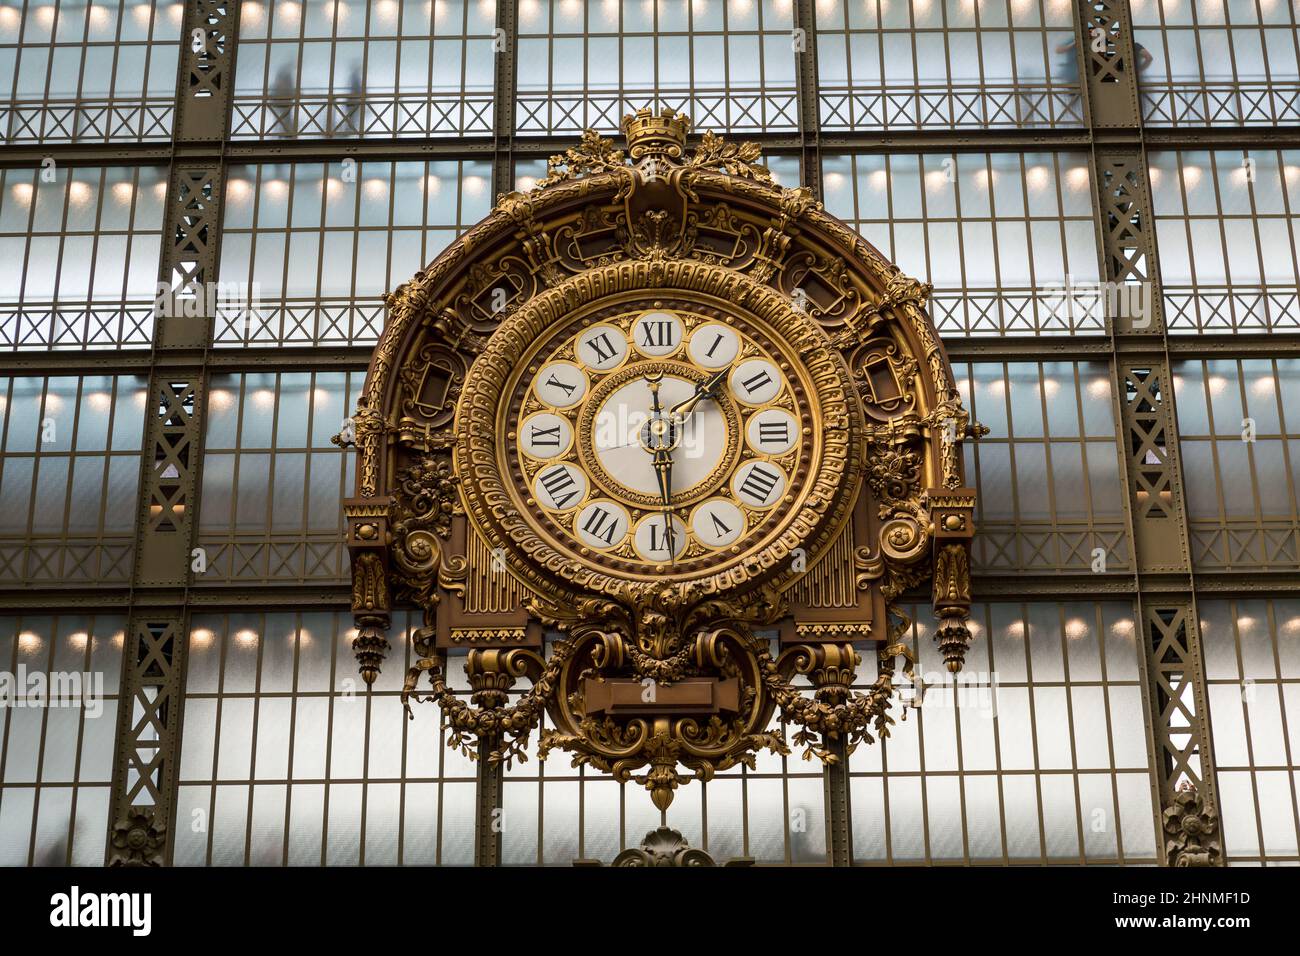 PARIS - 7. SEPTEMBER 2014: Goldene Uhr des Museums D'Orsay in Paris, Frankreich. Musee d'Orsay verfügt über die größte Sammlung impressionistischer und post-impressionistischer Gemälde der Welt. Stockfoto